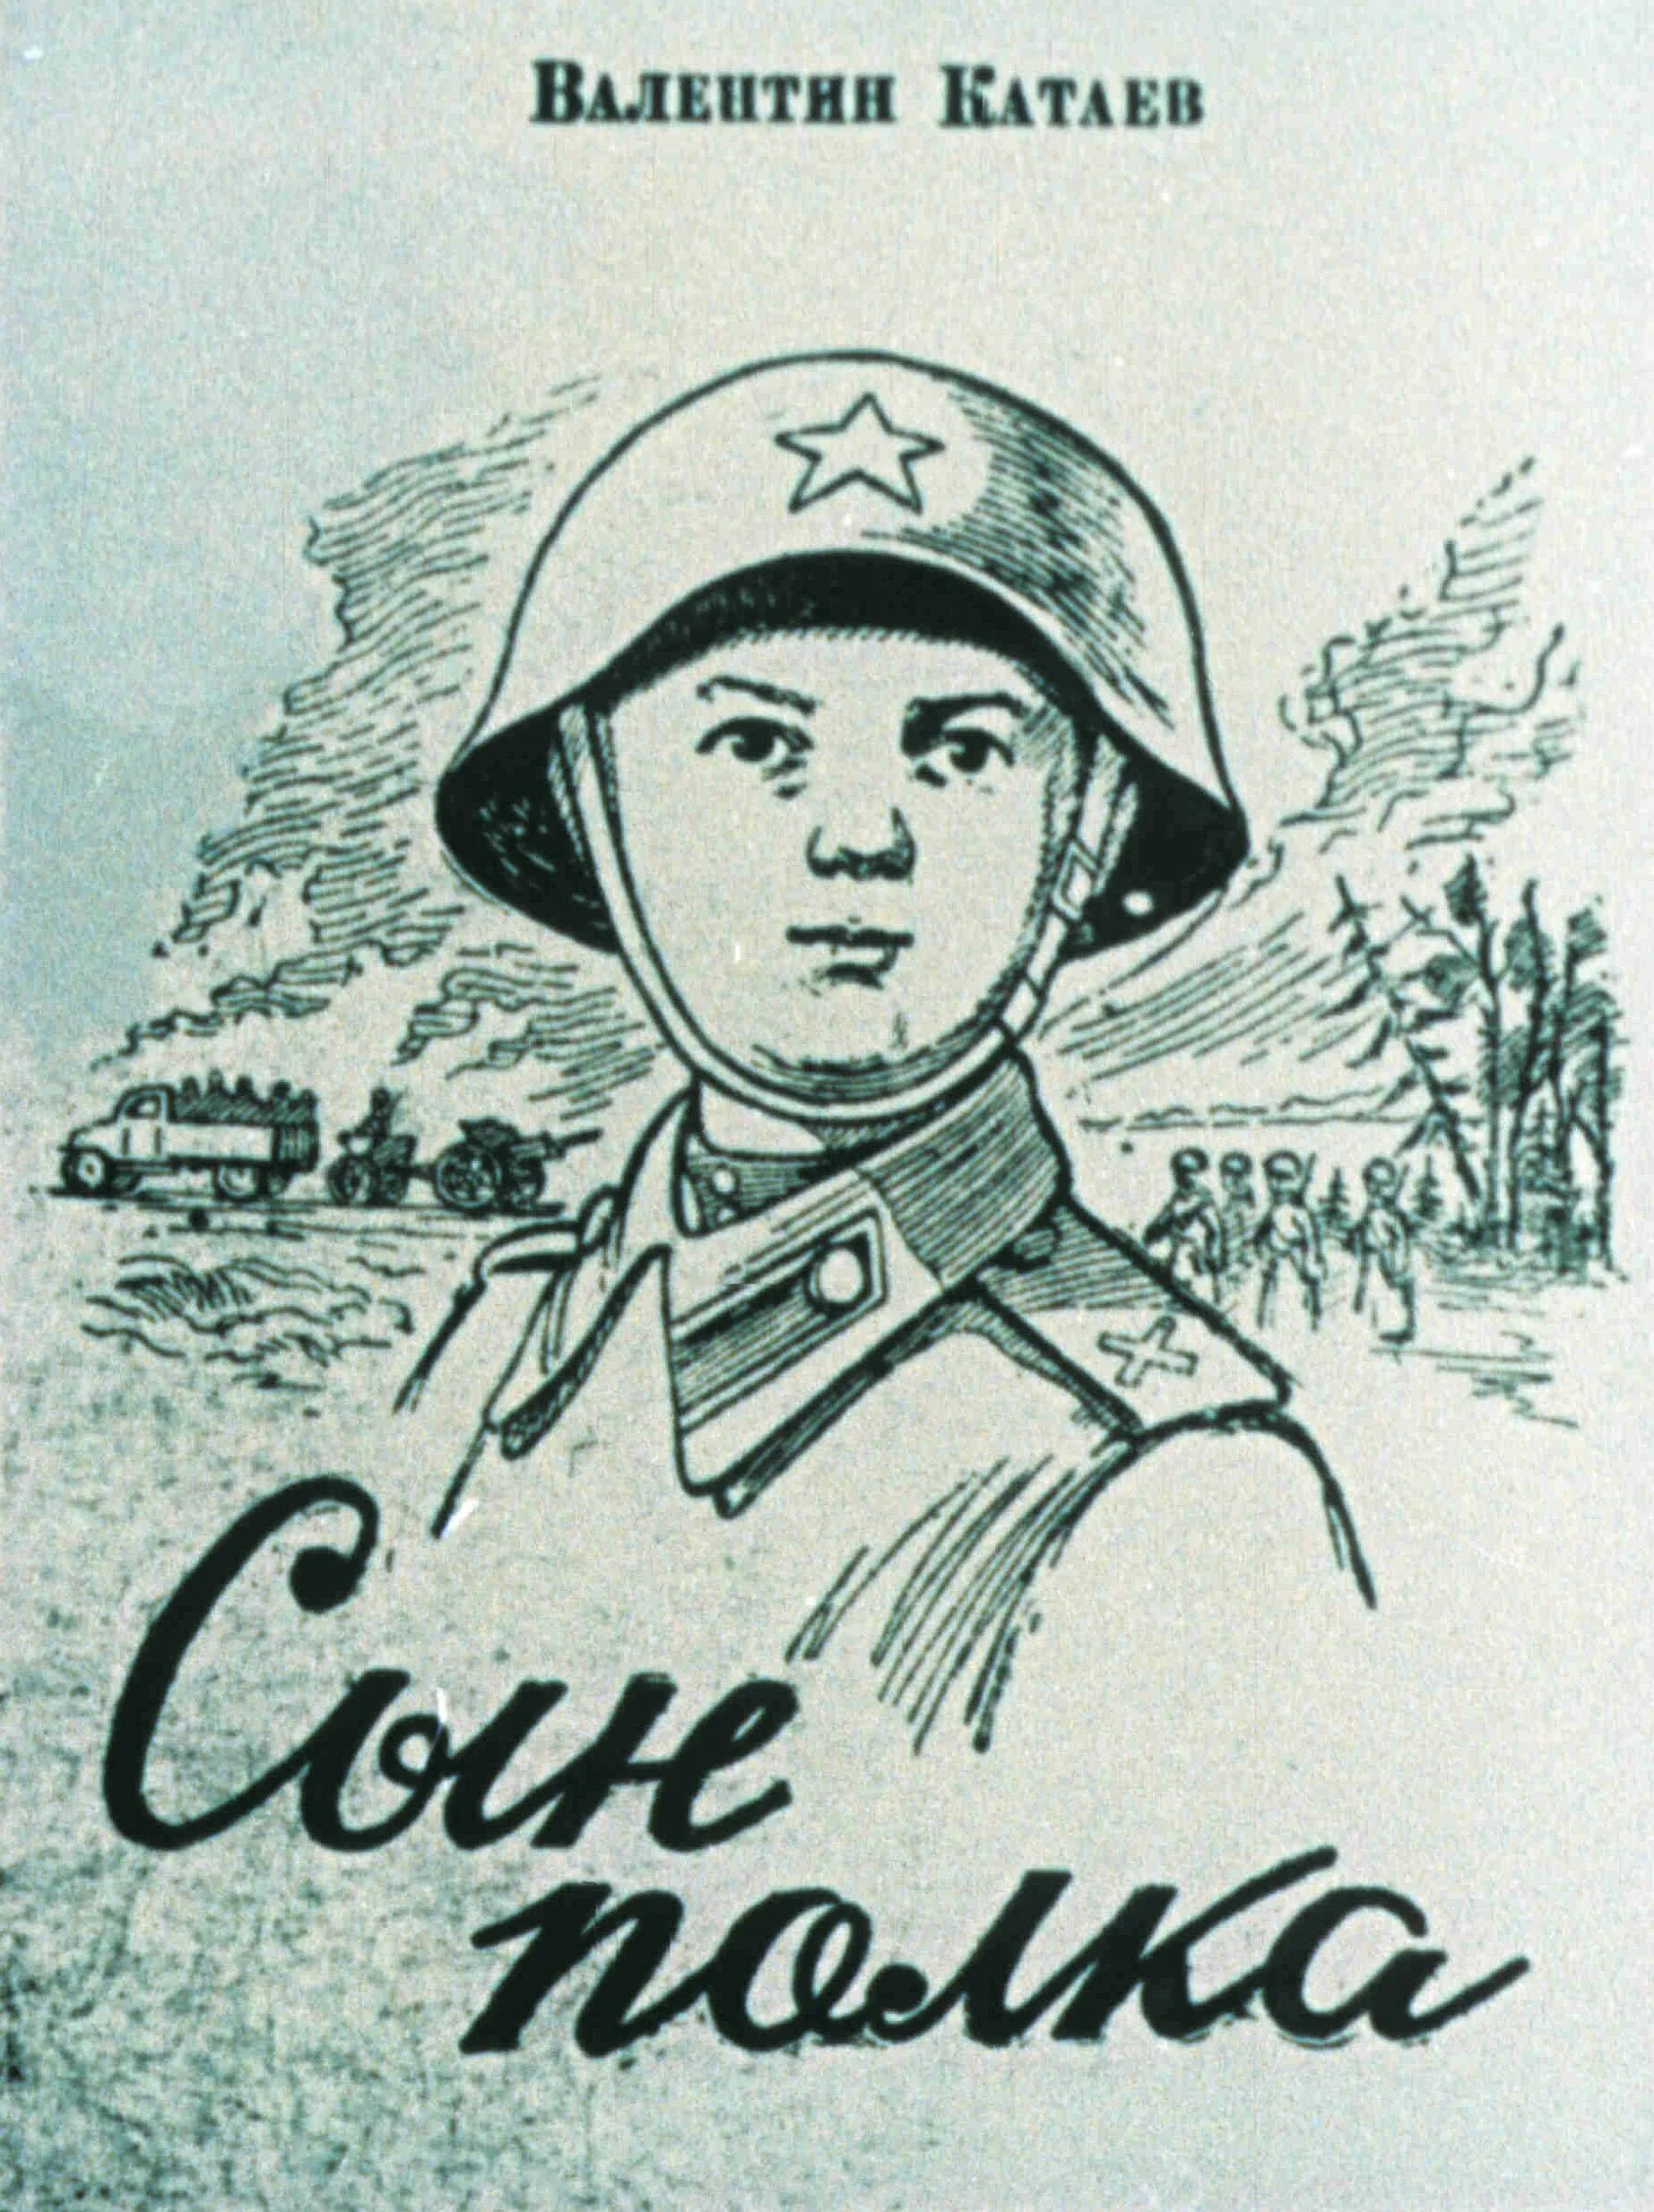 Иллюстрации к сыну полка в Катаева